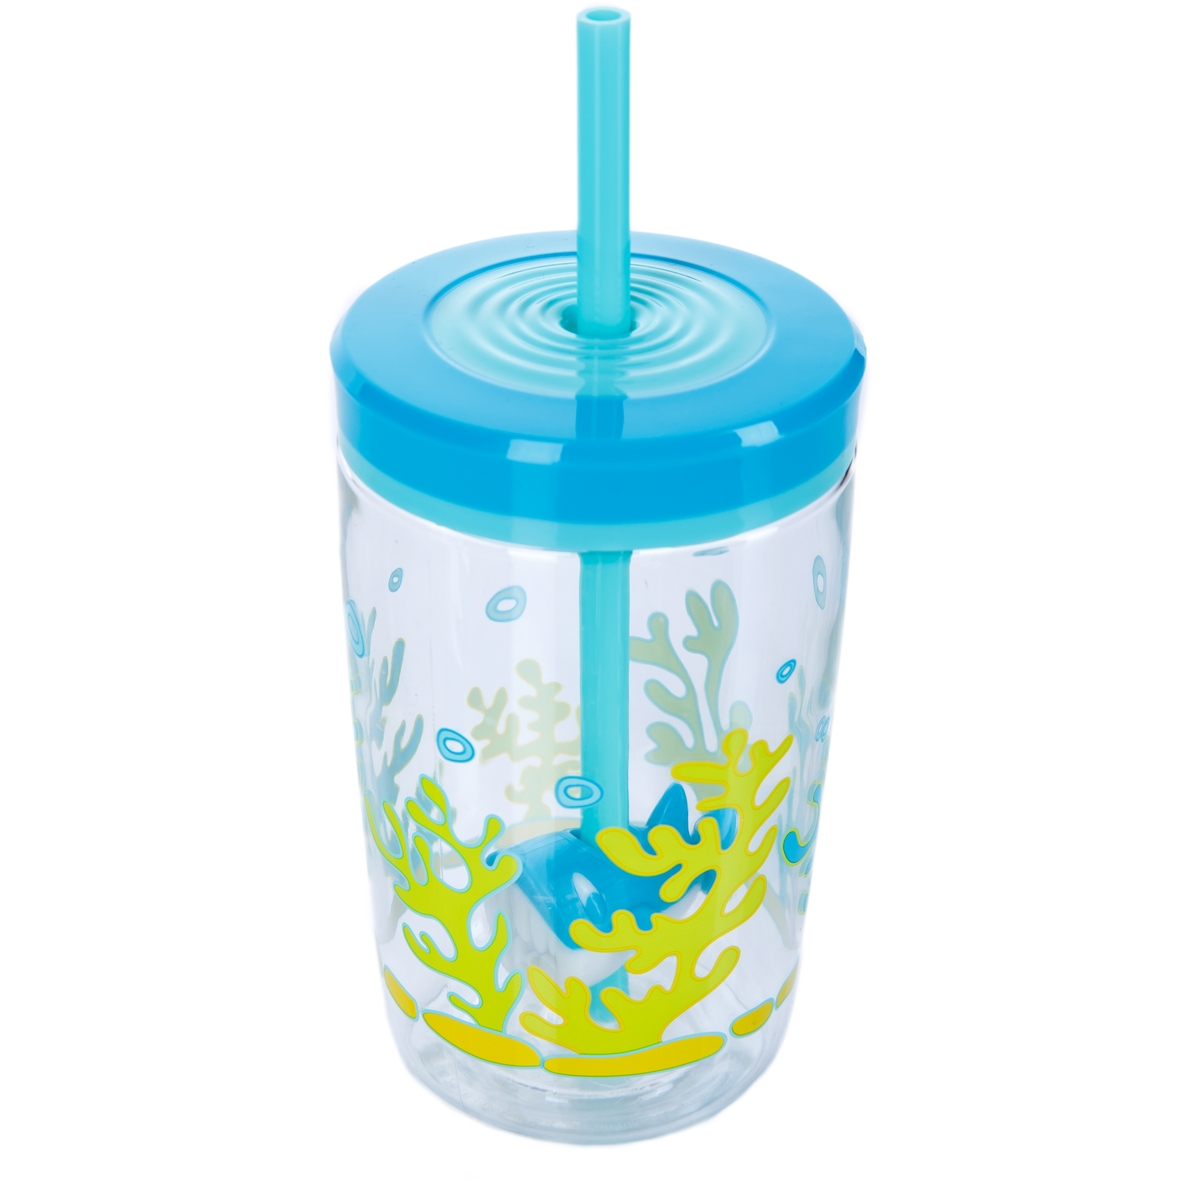 Детский стакан с соломинкой Floating straw tumbler Shark, 0.47 л (Contigo CONTIGO0772)